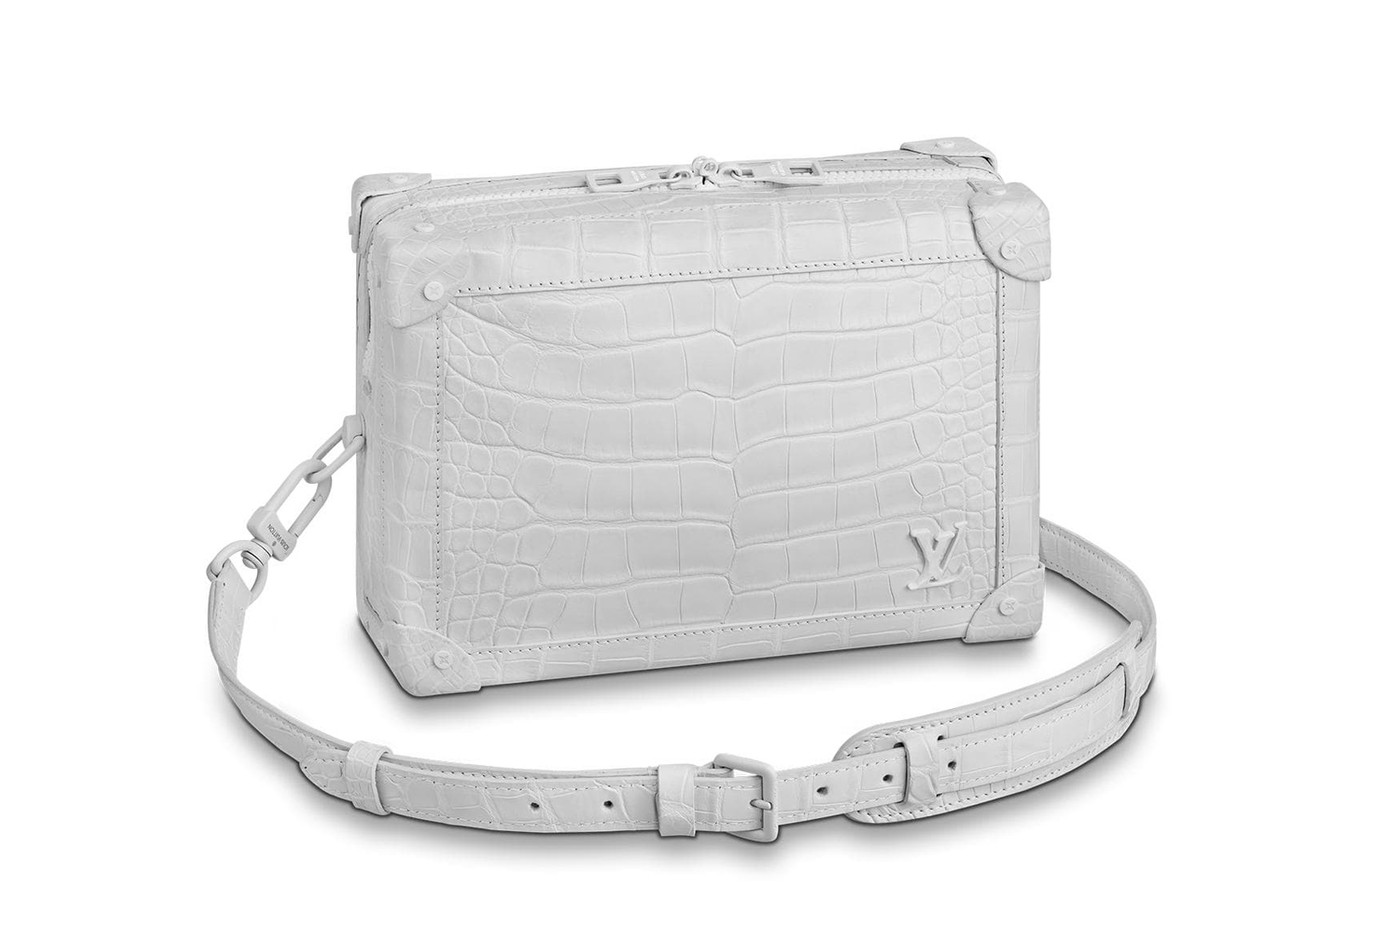 Louis Vuitton выпустил новые сумки по мотивам своих знаменитых сундуков для путешествий (фото 7)